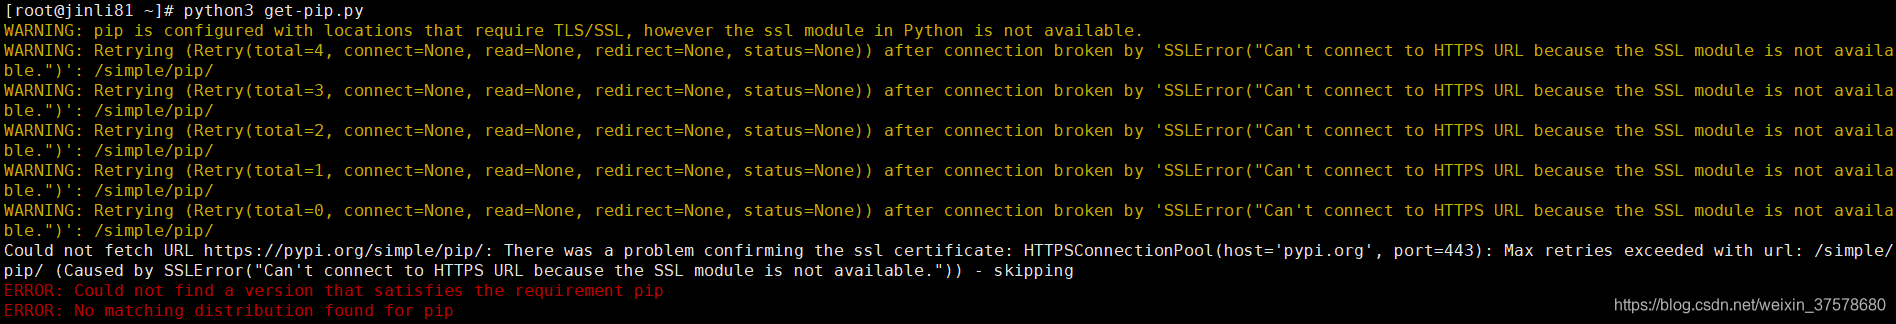 执行python3 get pip py报错:ERROR: Could not find a version that satisfies